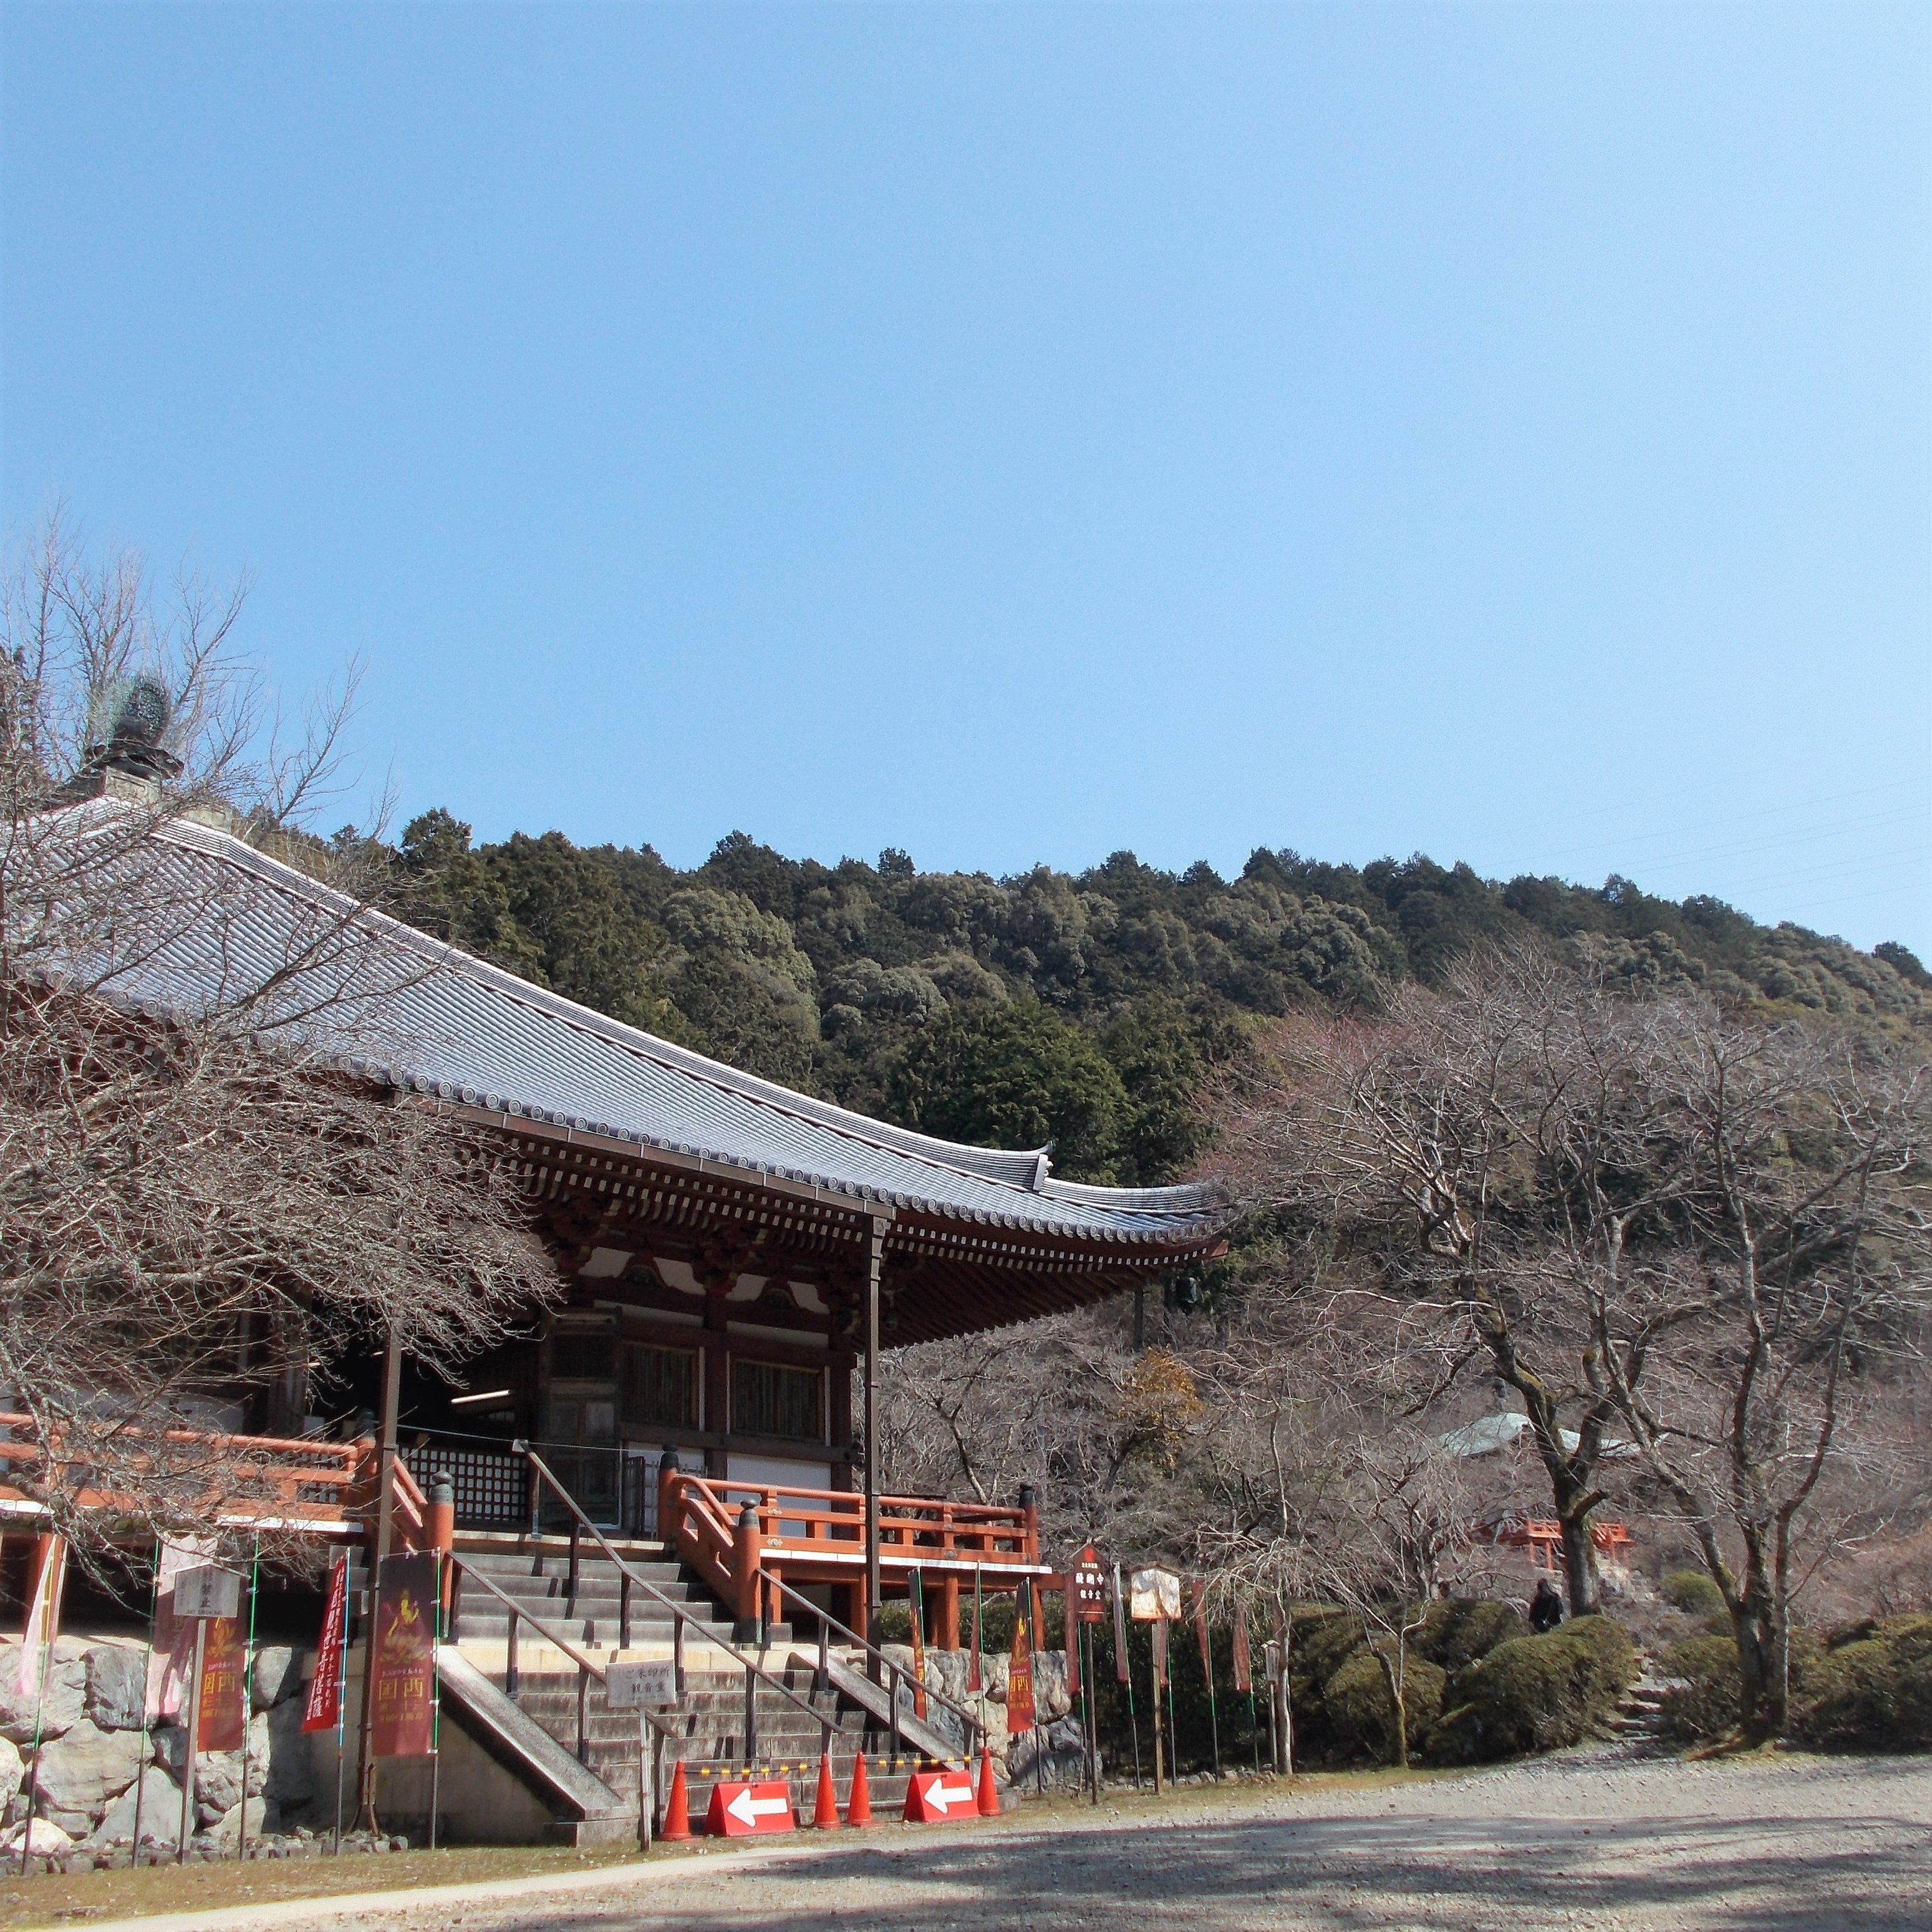 桜で有名な世界遺産「醍醐寺」は